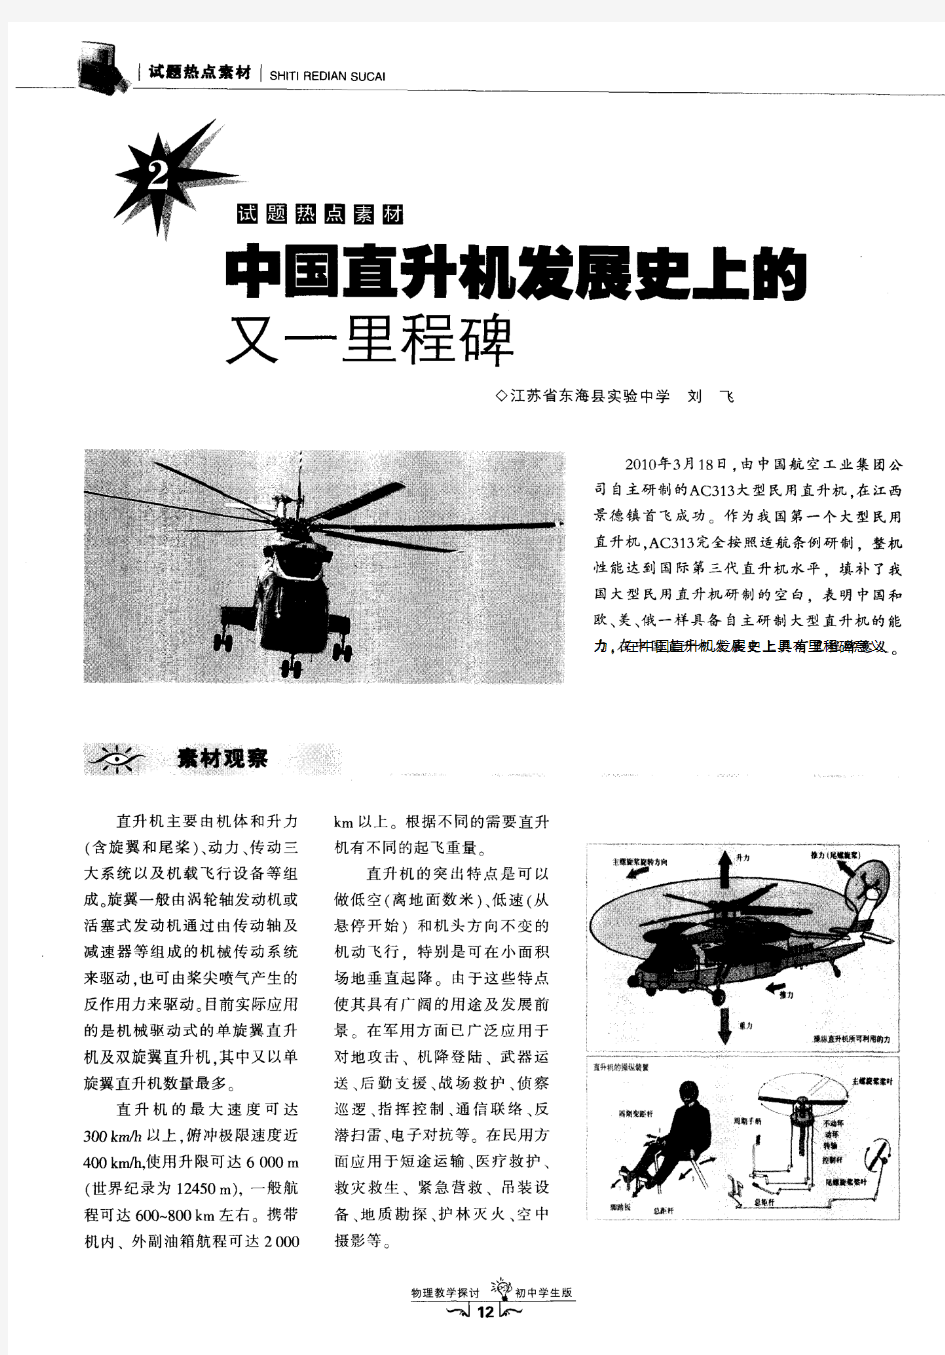 中国直升机发展史上的又一里程碑